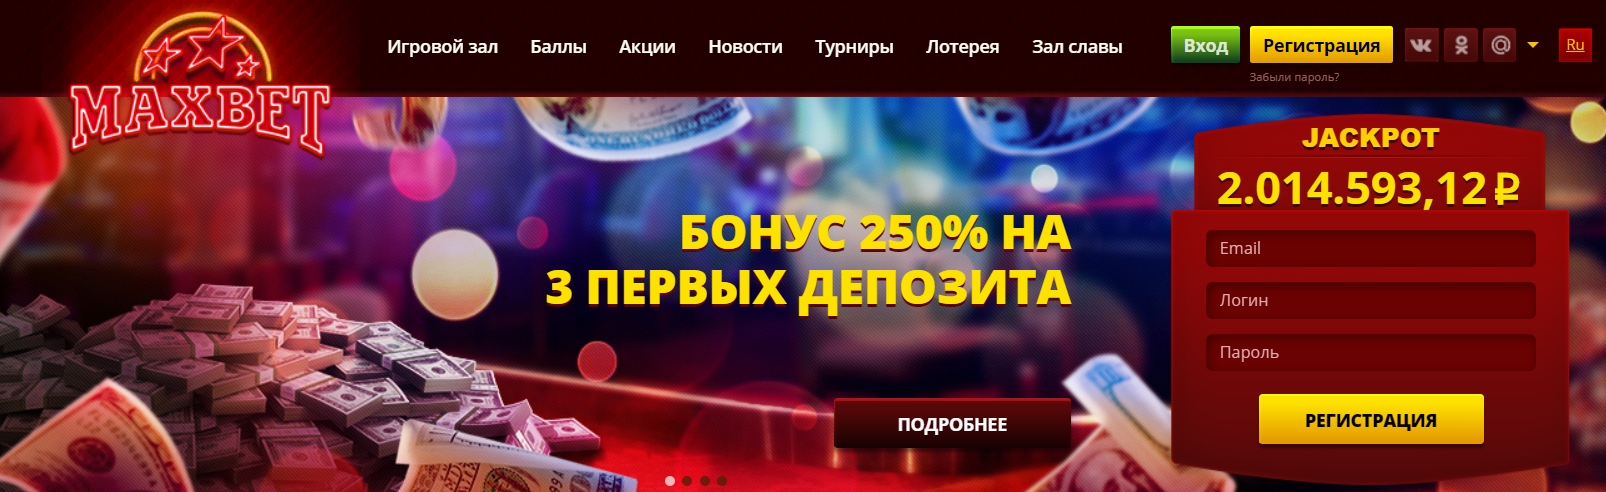 Бонусы на популярных игровых слот автоматах на сайте онлайн казино Максбетслотс